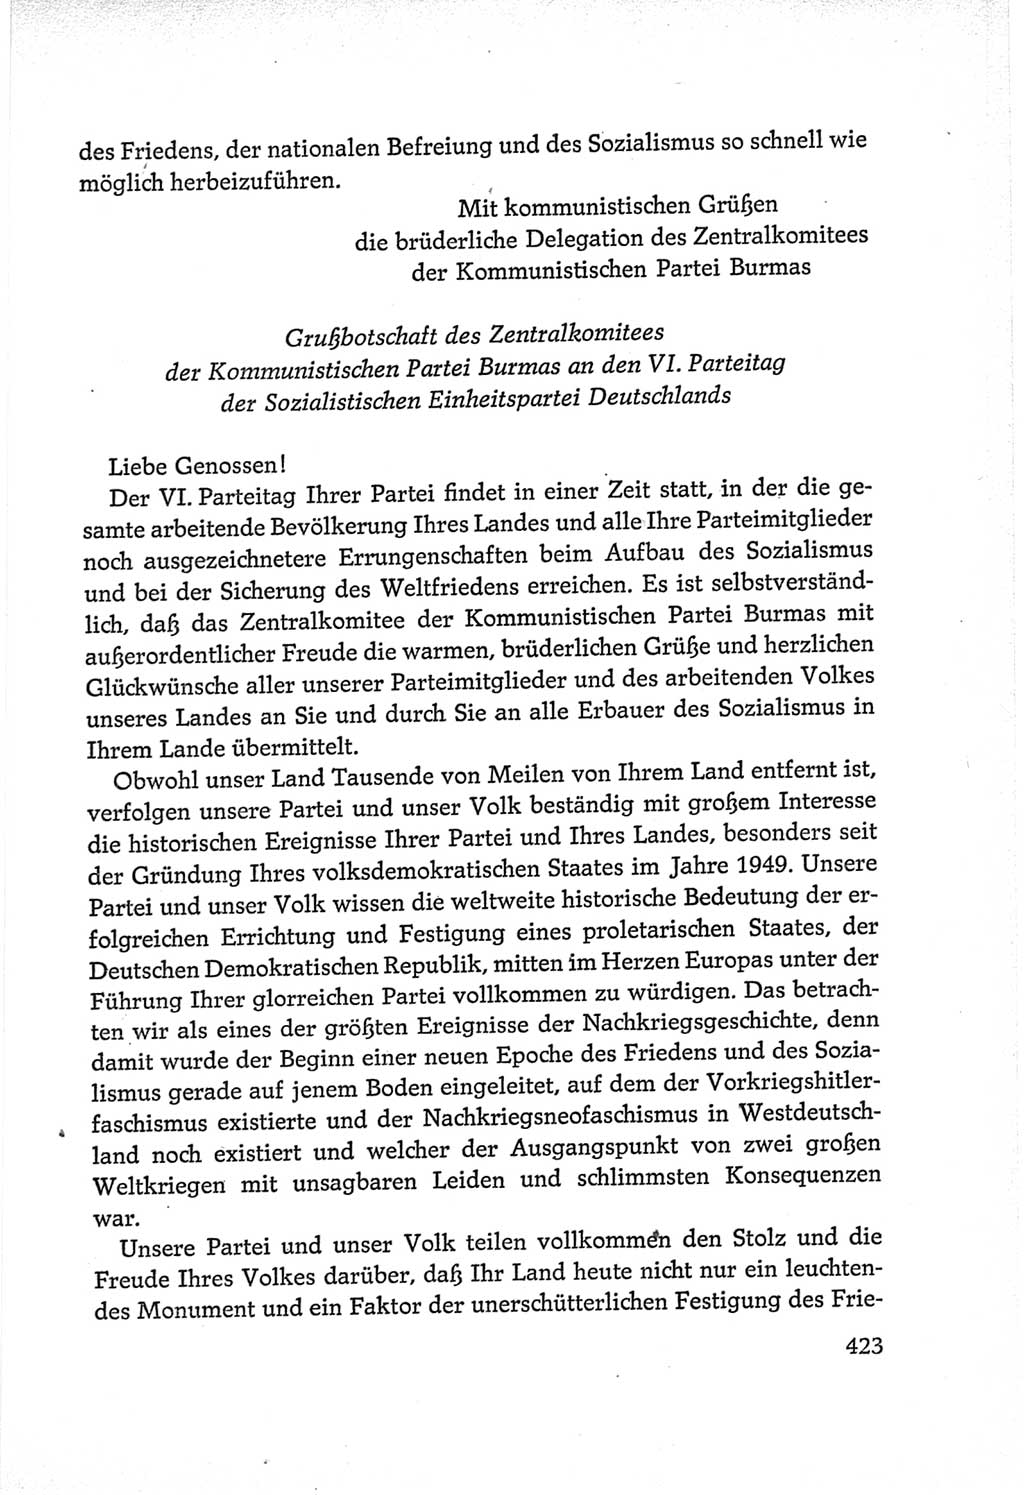 Protokoll der Verhandlungen des Ⅵ. Parteitages der Sozialistischen Einheitspartei Deutschlands (SED) [Deutsche Demokratische Republik (DDR)] 1963, Band Ⅱ, Seite 423 (Prot. Verh. Ⅵ. PT SED DDR 1963, Bd. Ⅱ, S. 423)